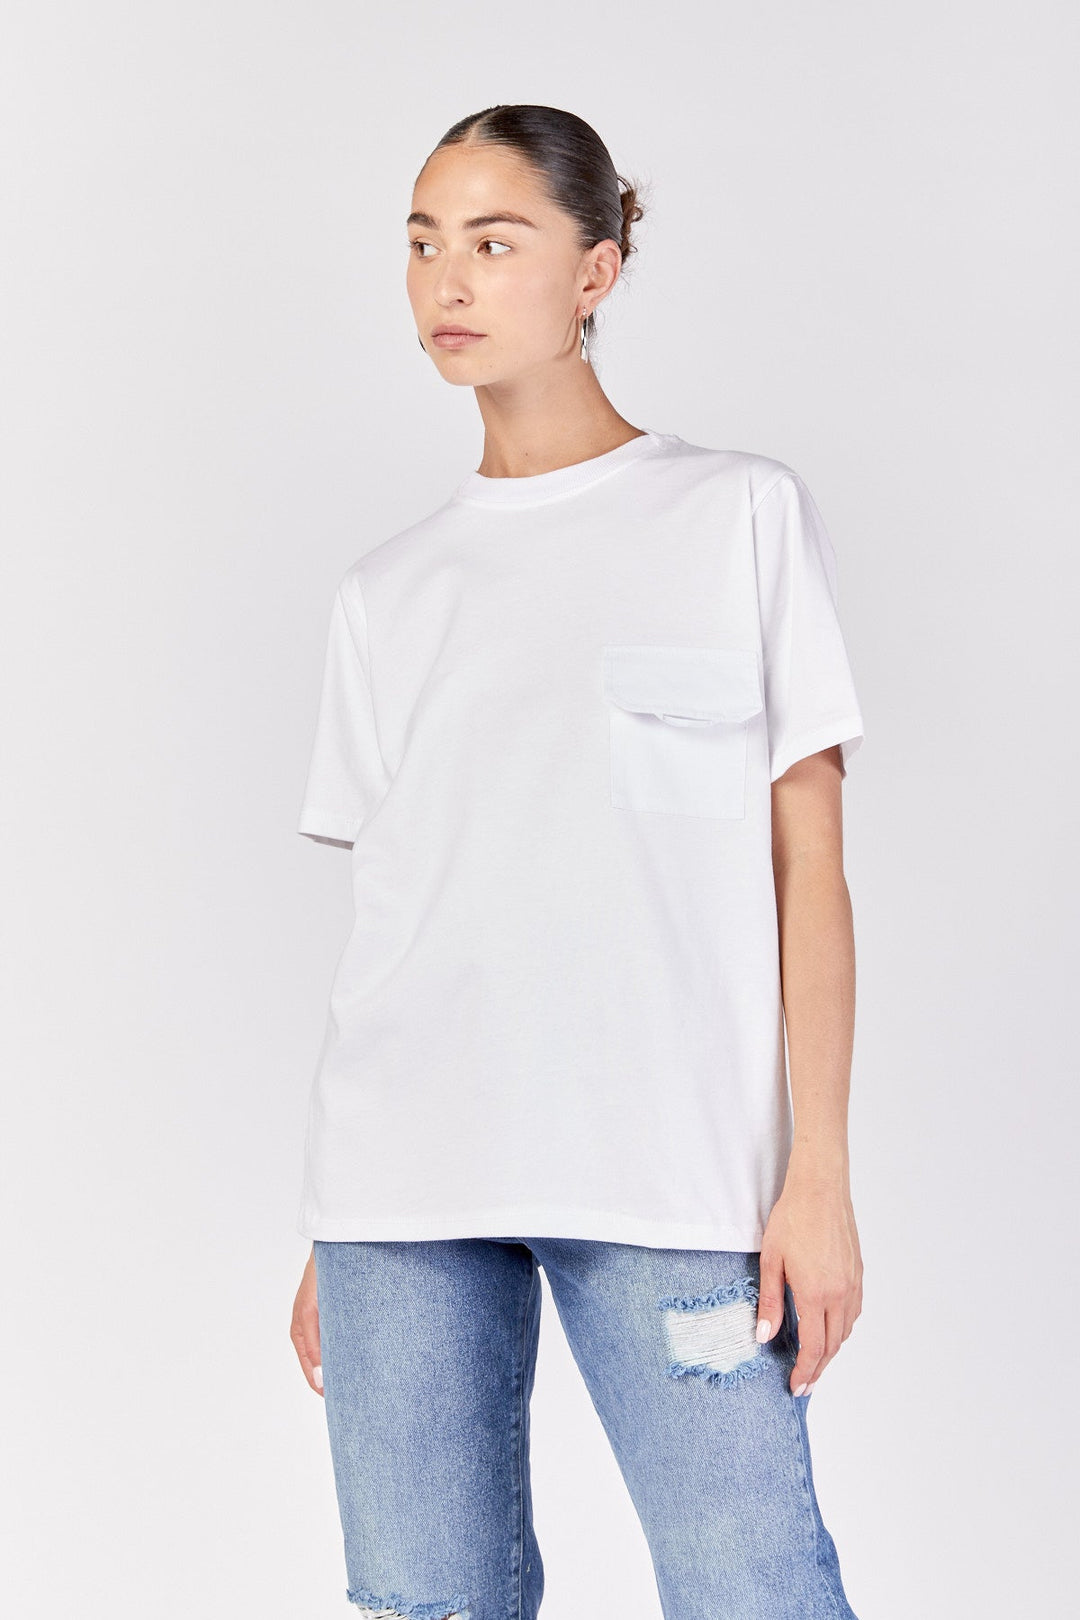 חולצת ניקי בצבע לבן - Razili Studio